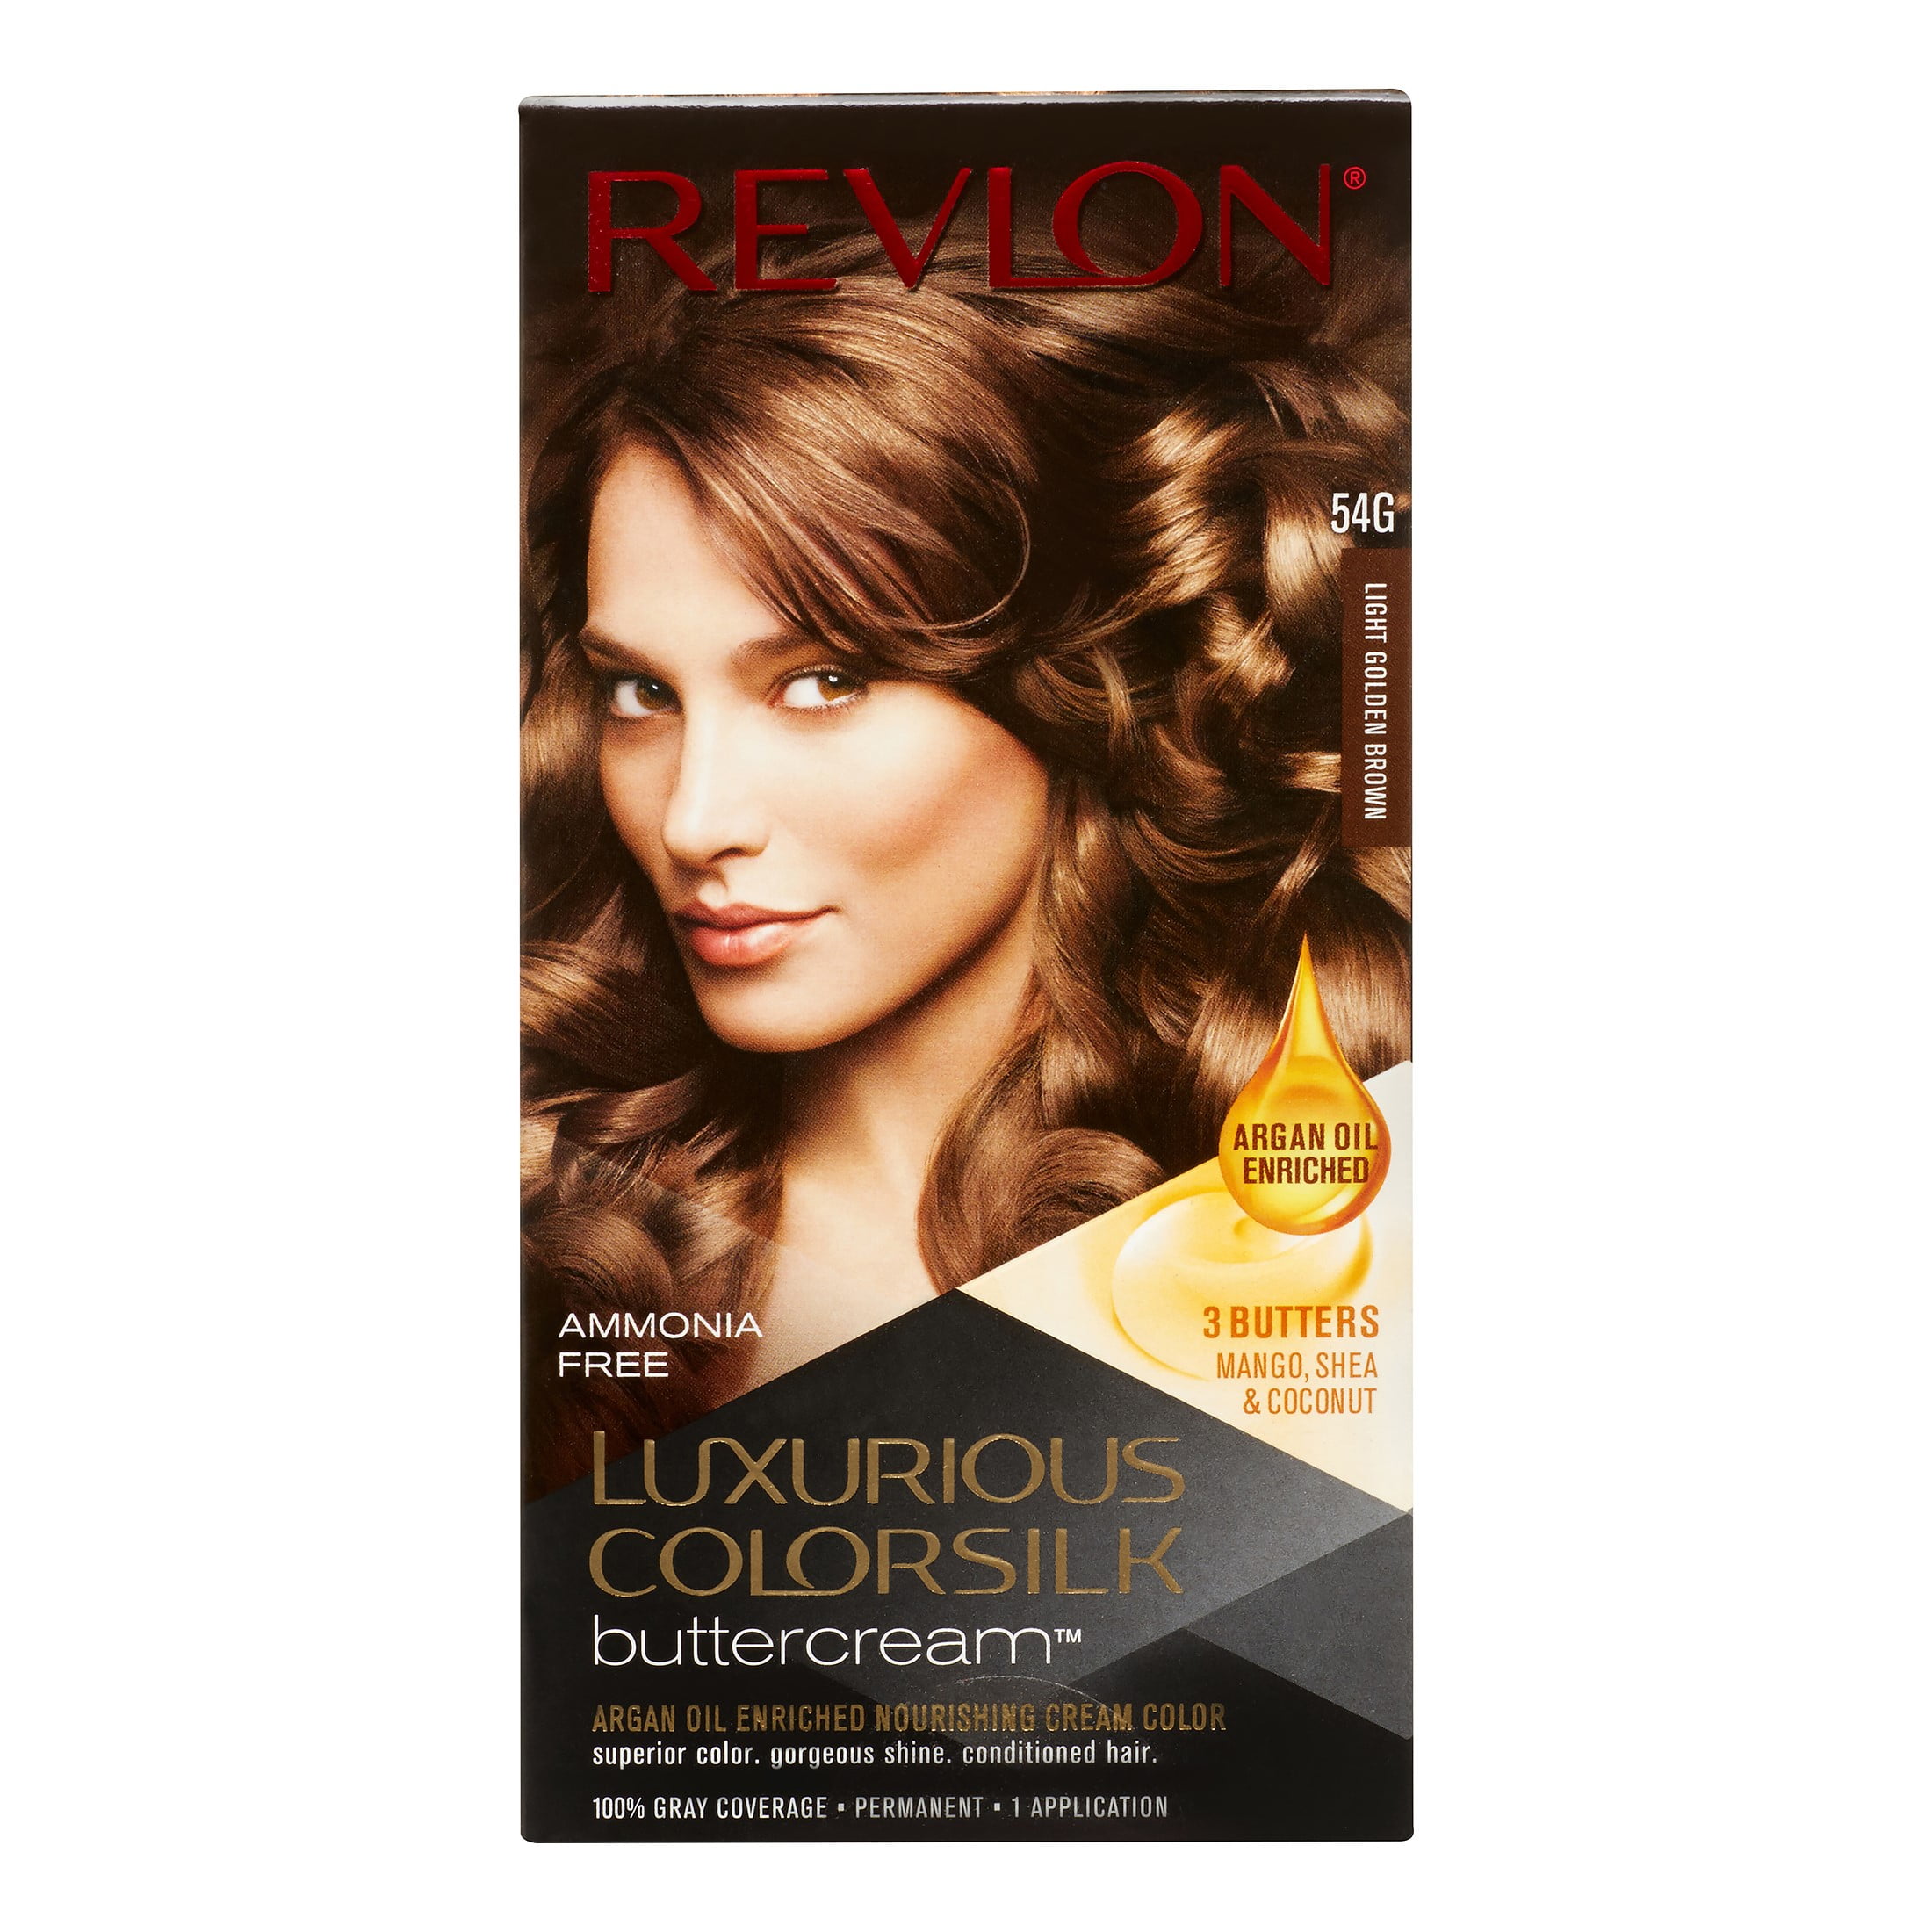 Revlon Luxurious Colorsilk Buttercream Light Golden Brown